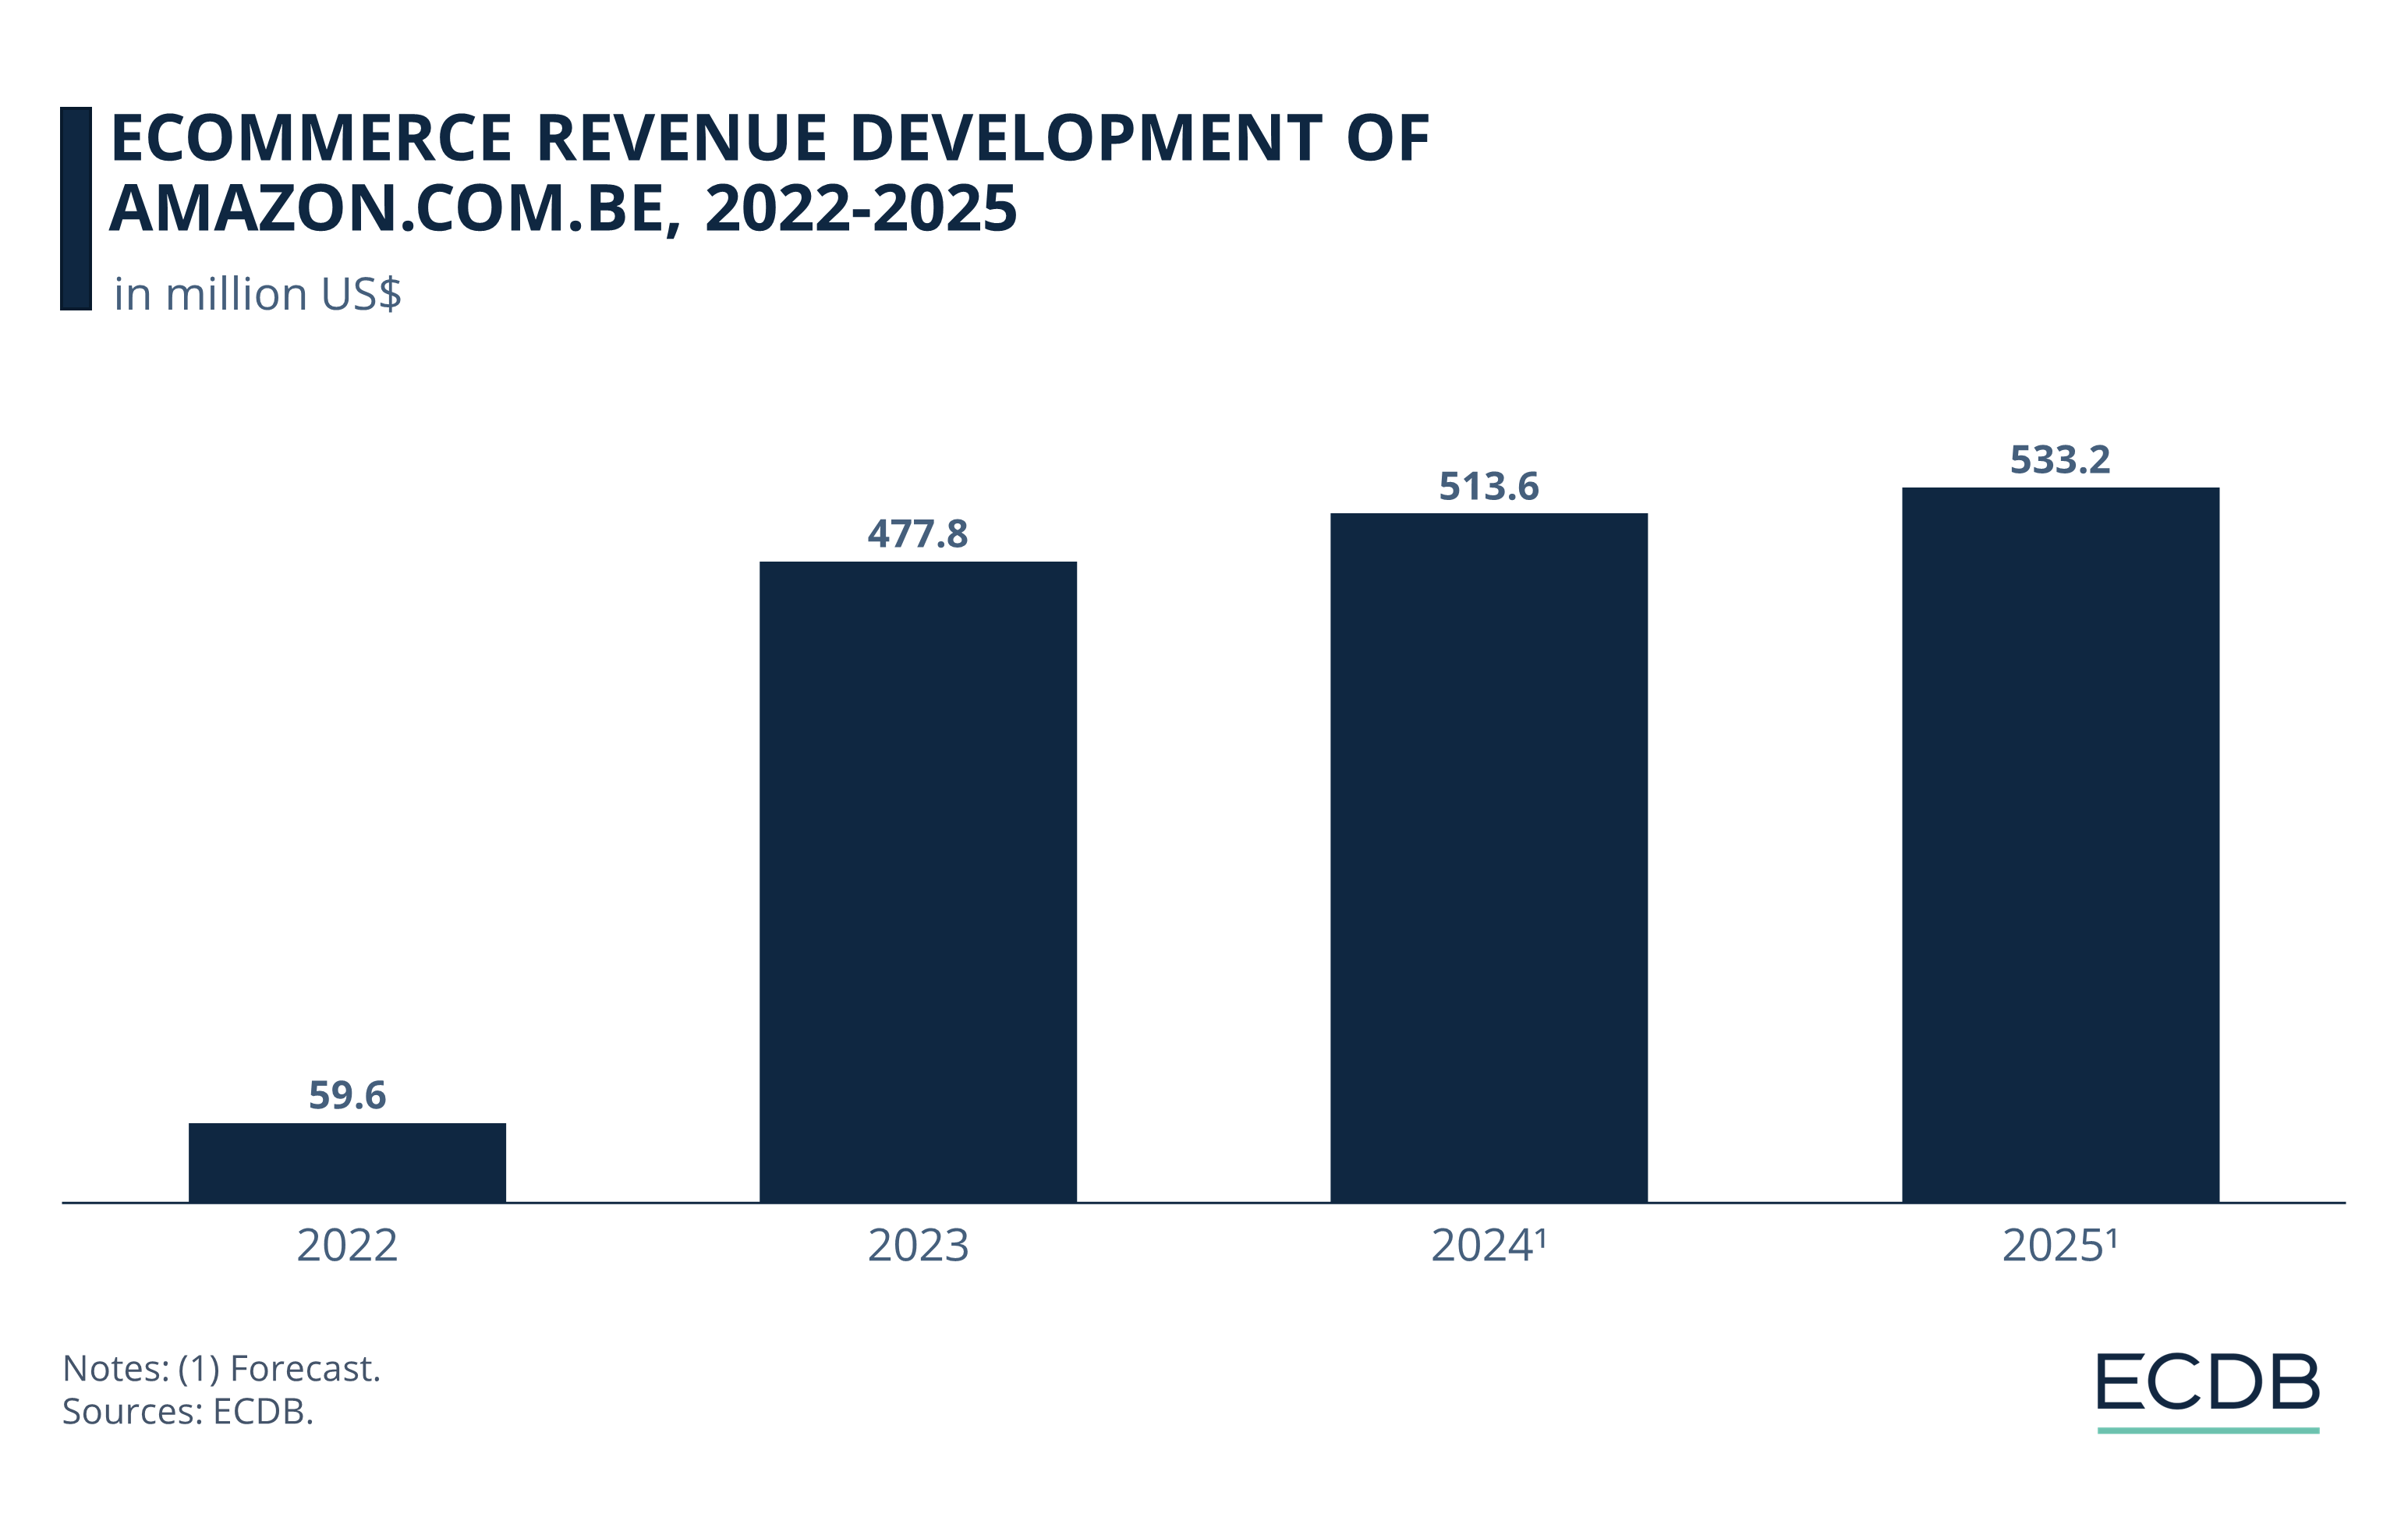 eCommerce Revenue Development of Amazon.com.be, 2022-2025